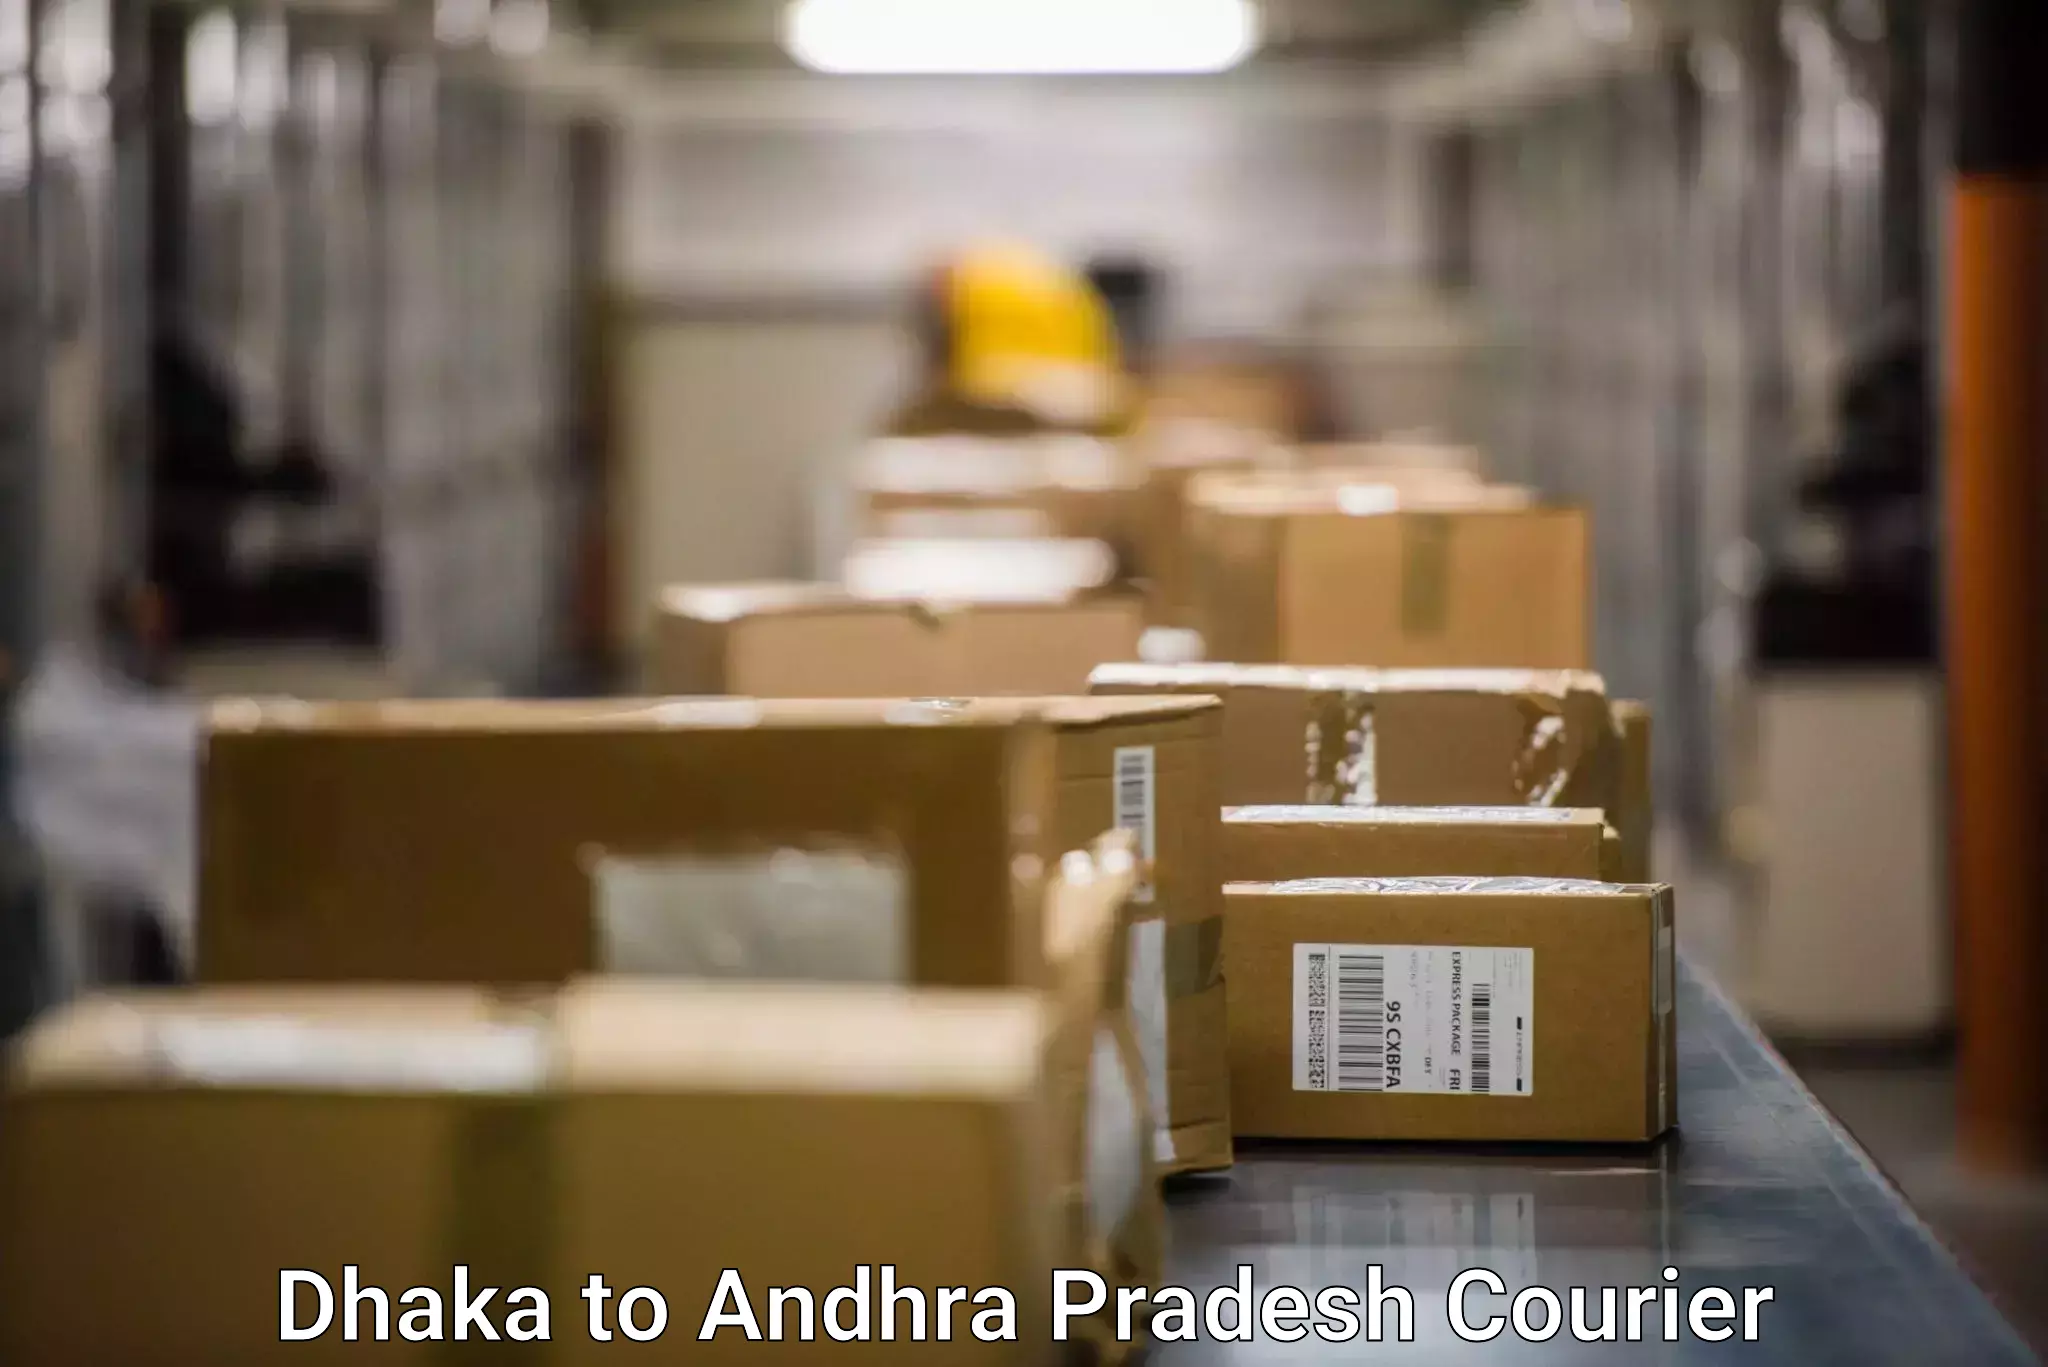 International parcel service Dhaka to Andhra Pradesh